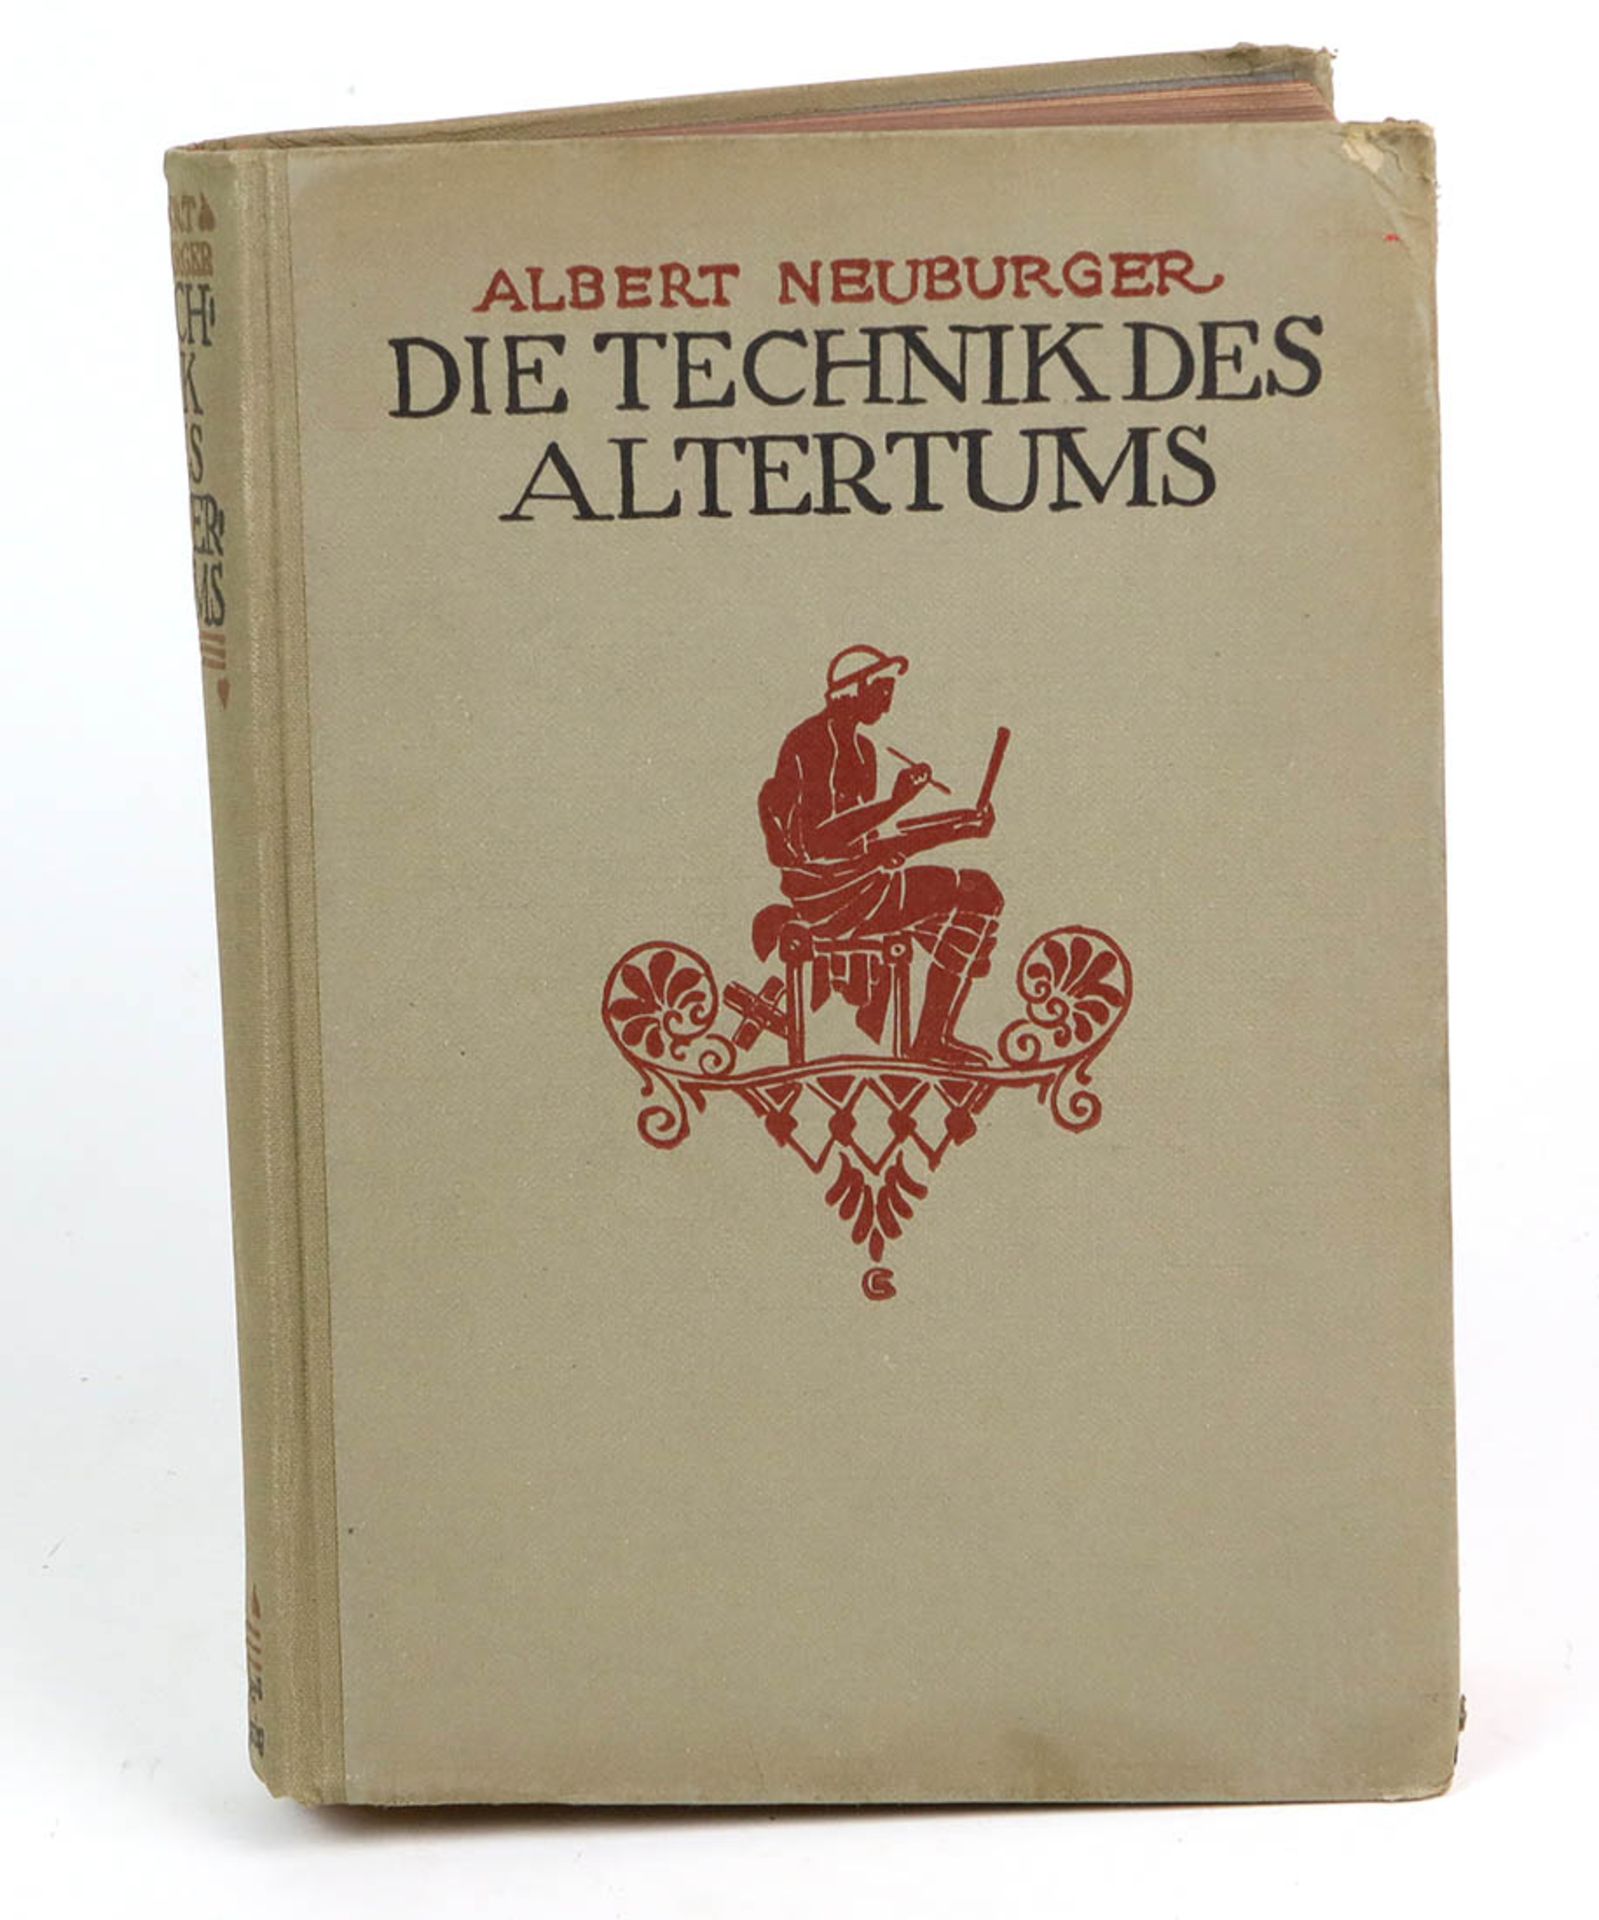 Die Technik des Altertumsvon Dr. Albert Neuburger, 3. Aufl., 570 S. m. 676 Abb., R. Vo